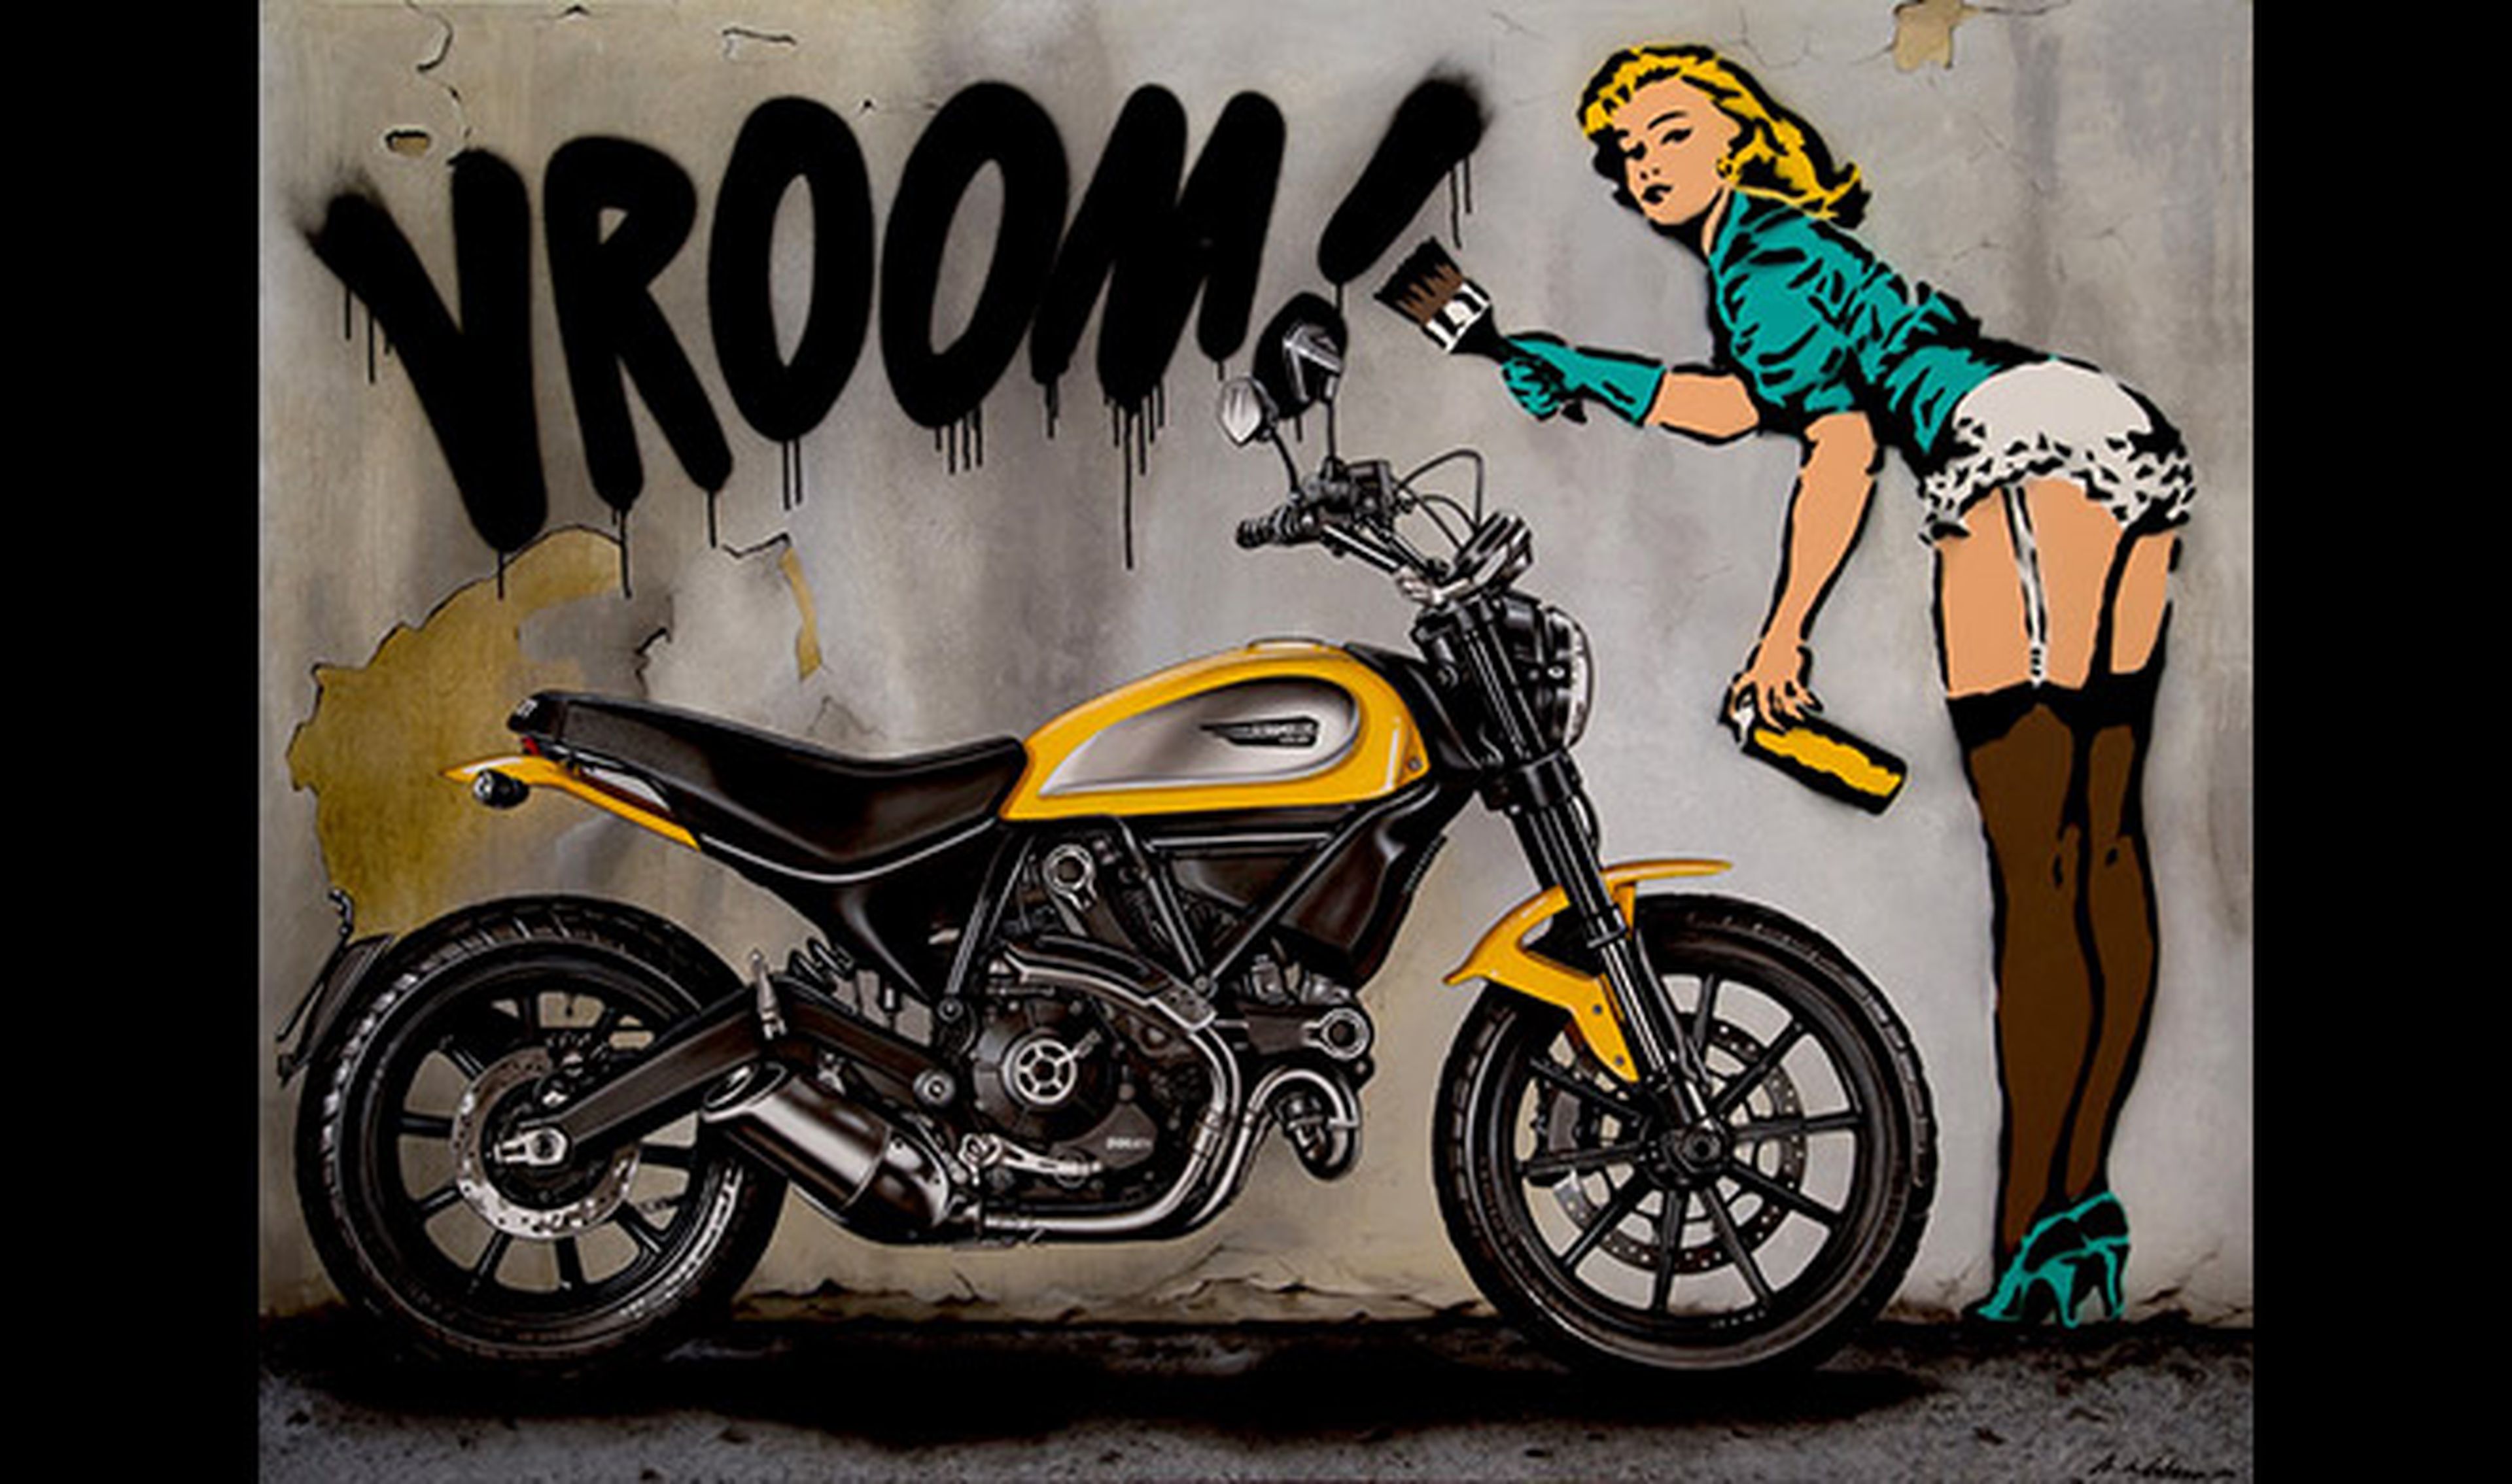 La Ducati Scrambler hecha graffiti